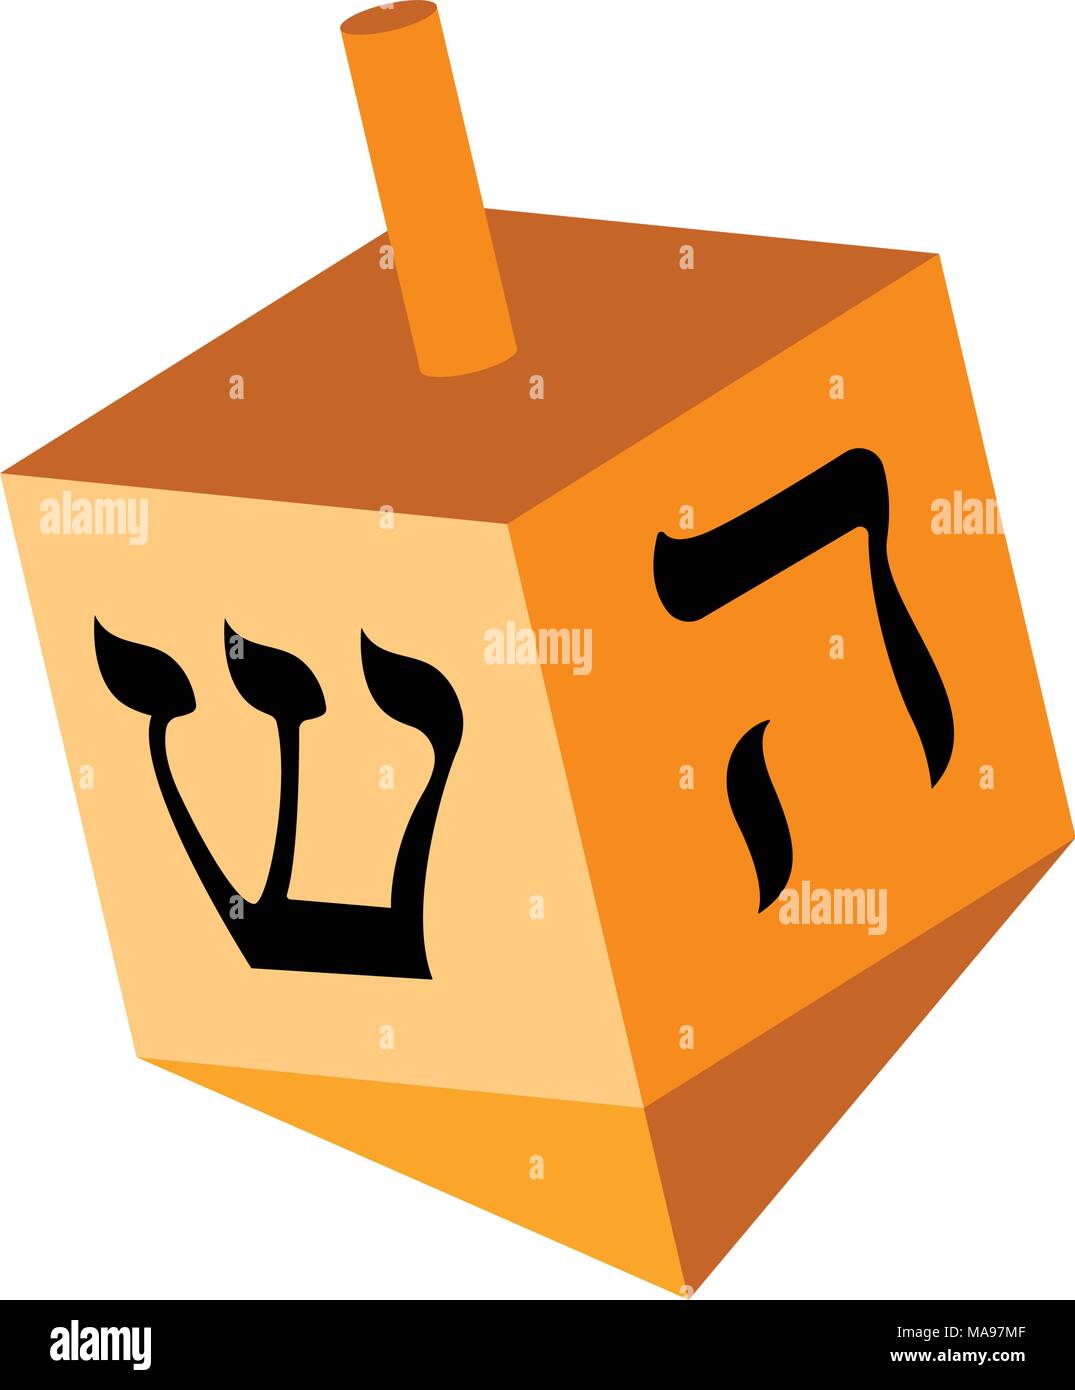 Jewish dreidel icon Stock Vector